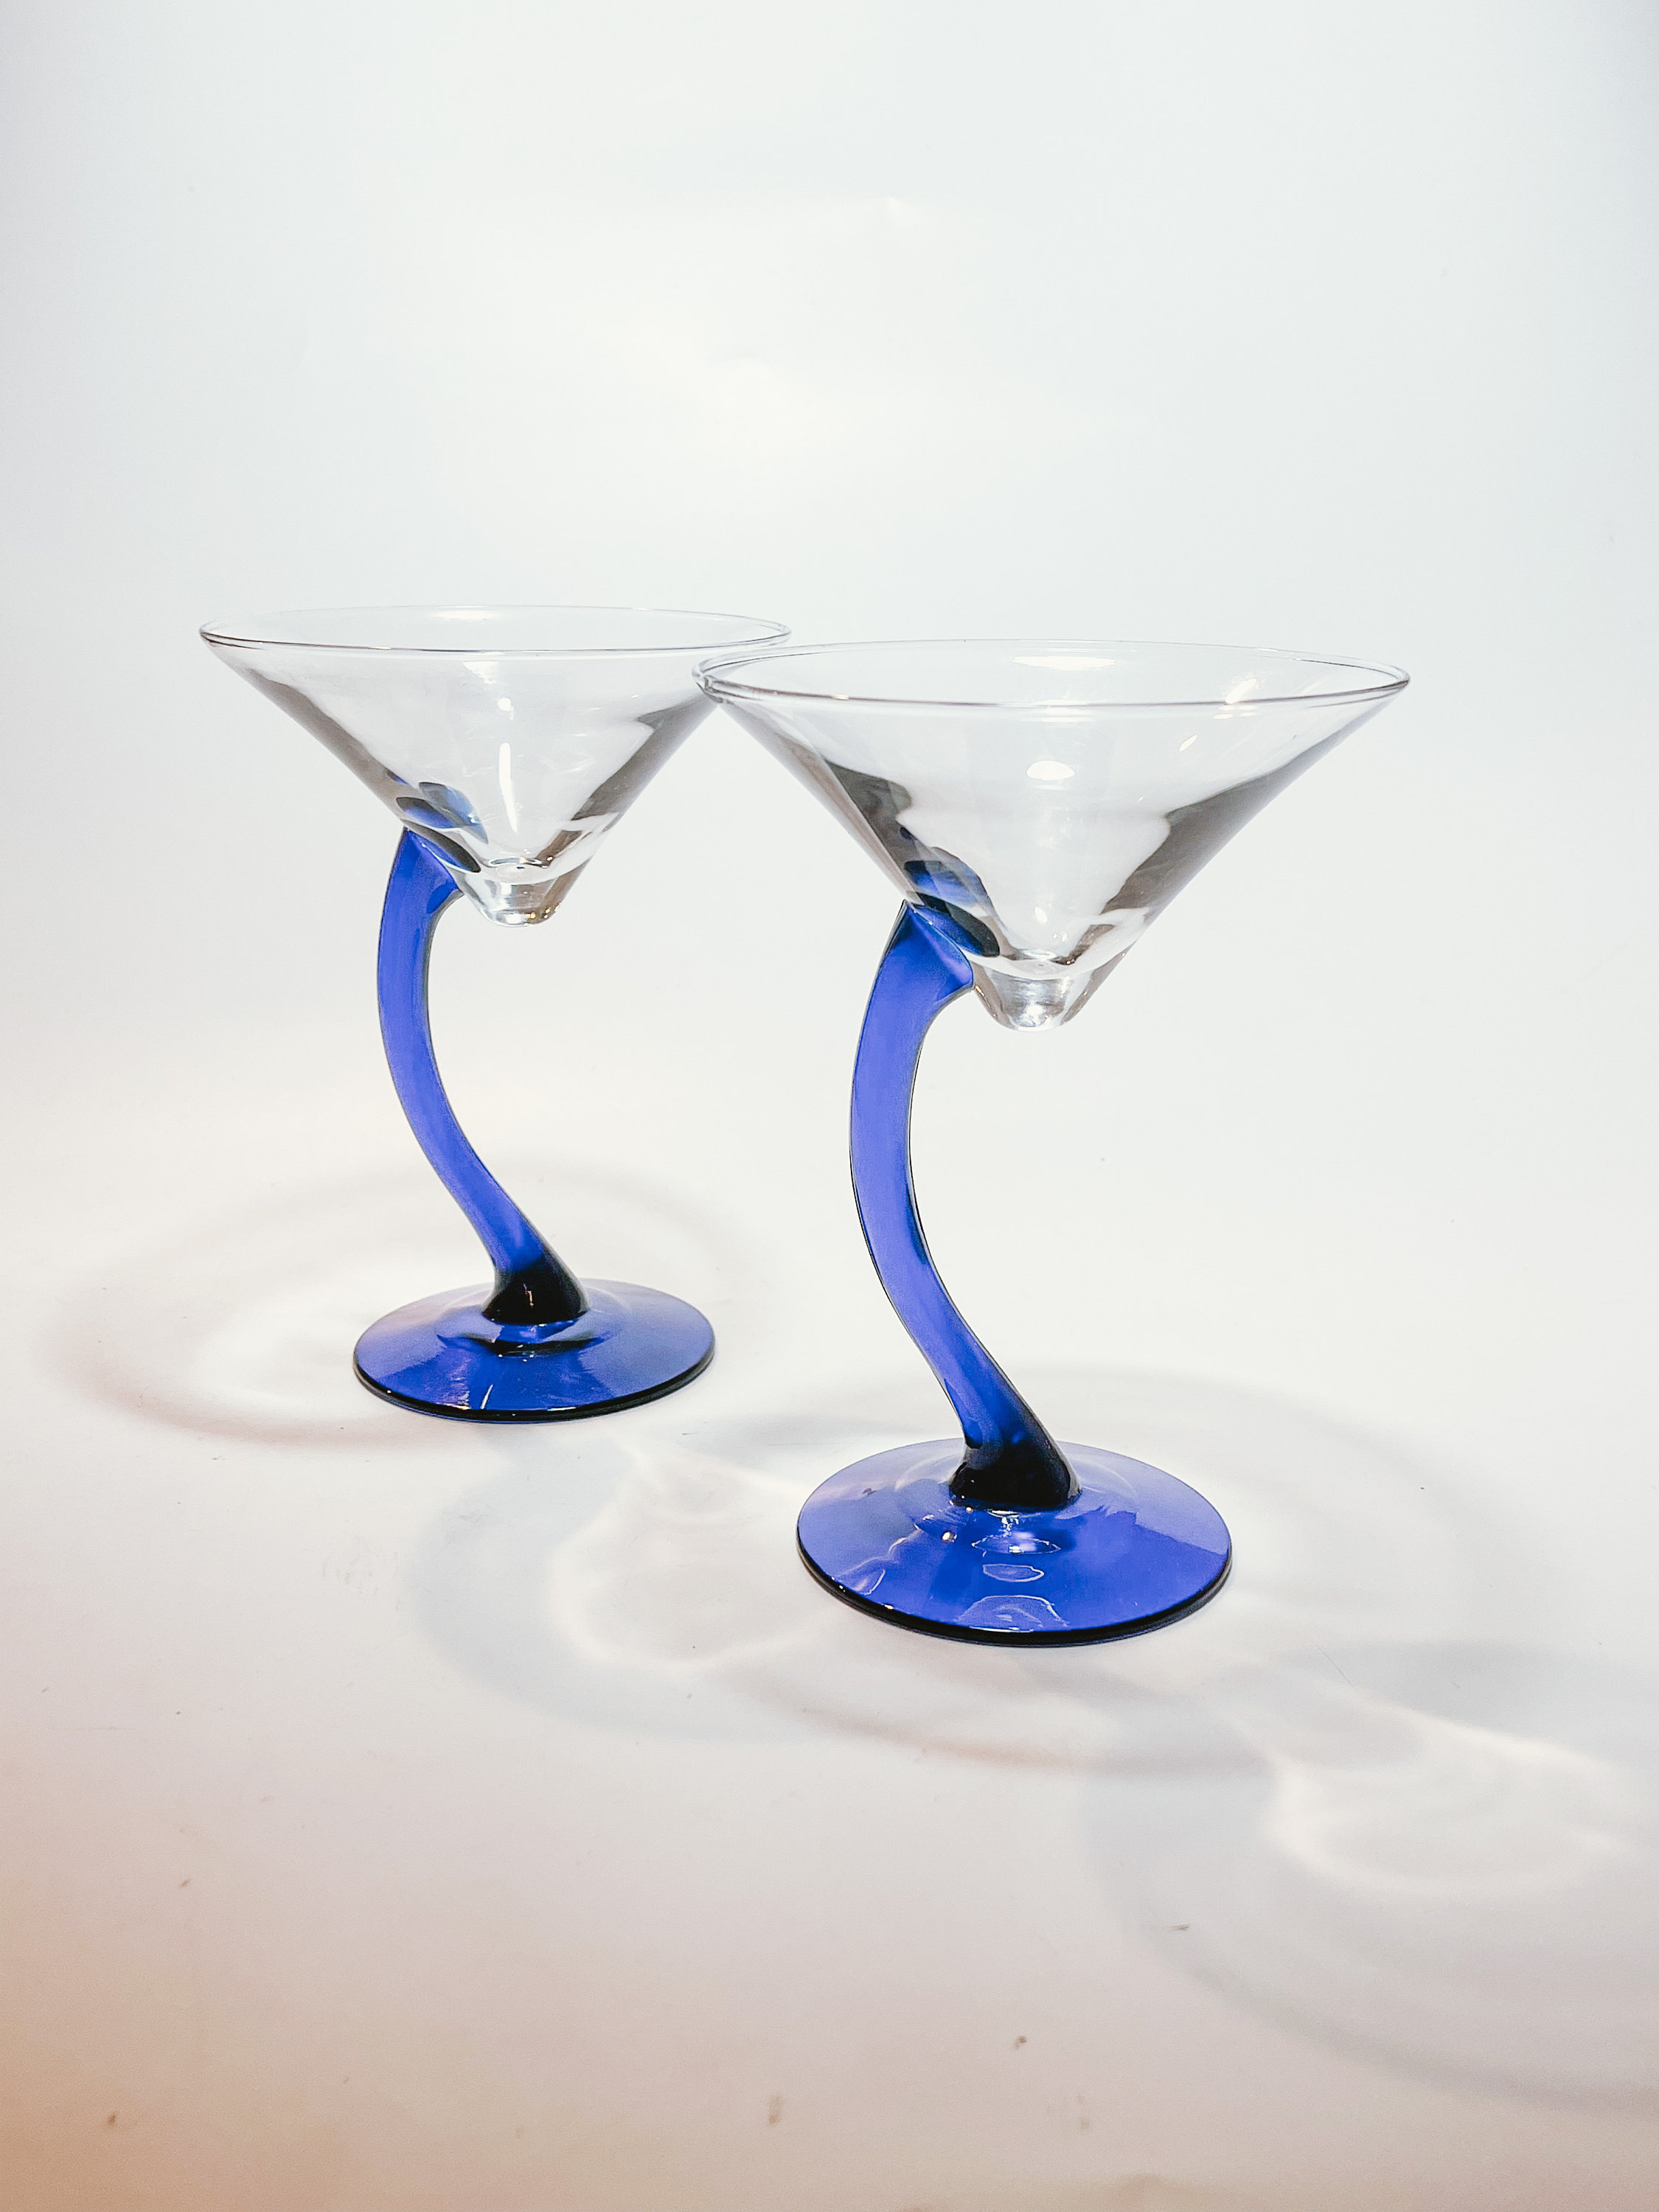 Libbey Super Stems 44 oz. Customizable Super Martini Glass - 6/Case